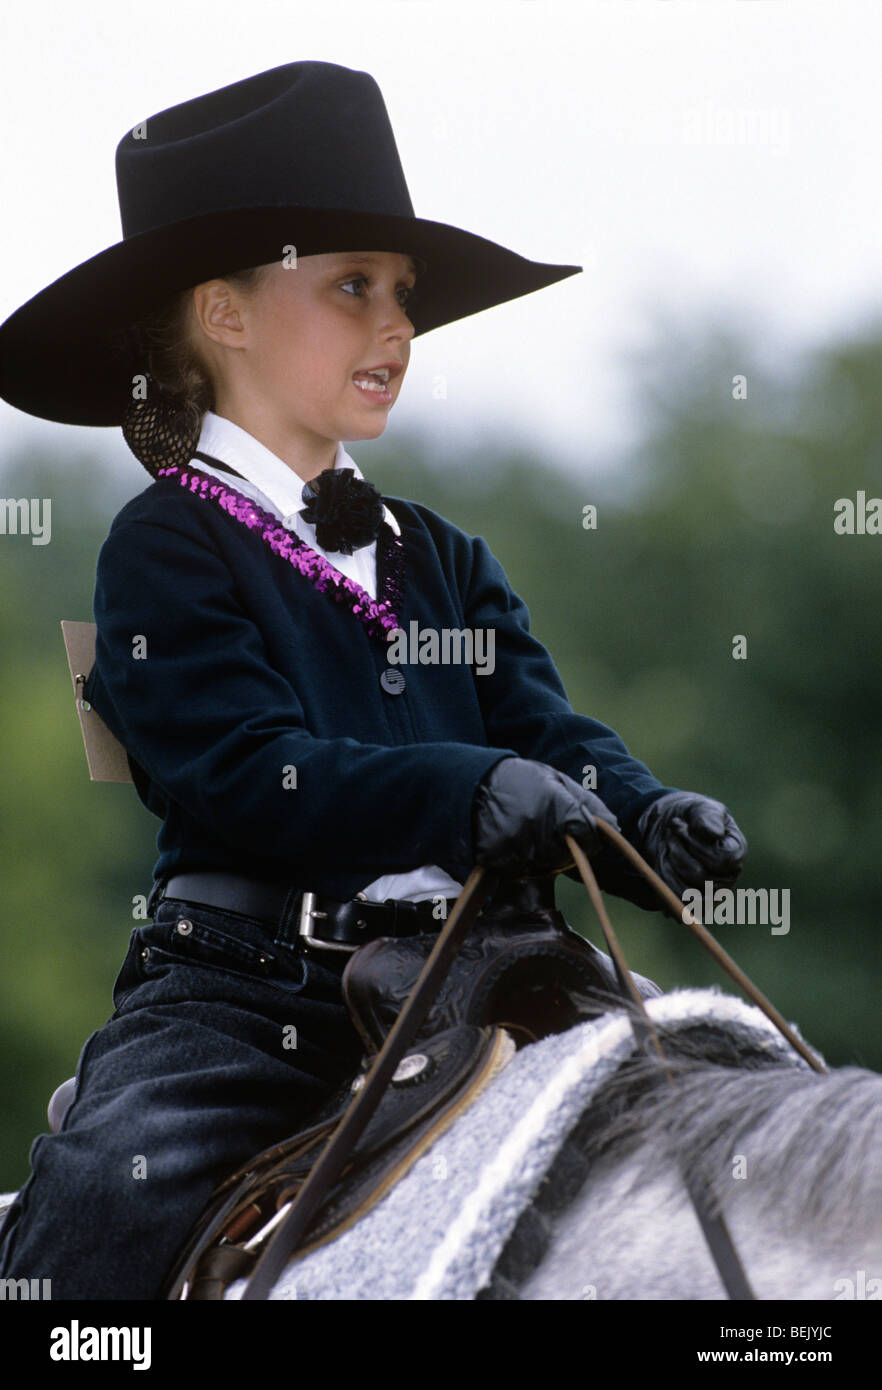 Kinder Cowboy Hut sitzt auf Pferd Zügel Reiten in Pferde-show